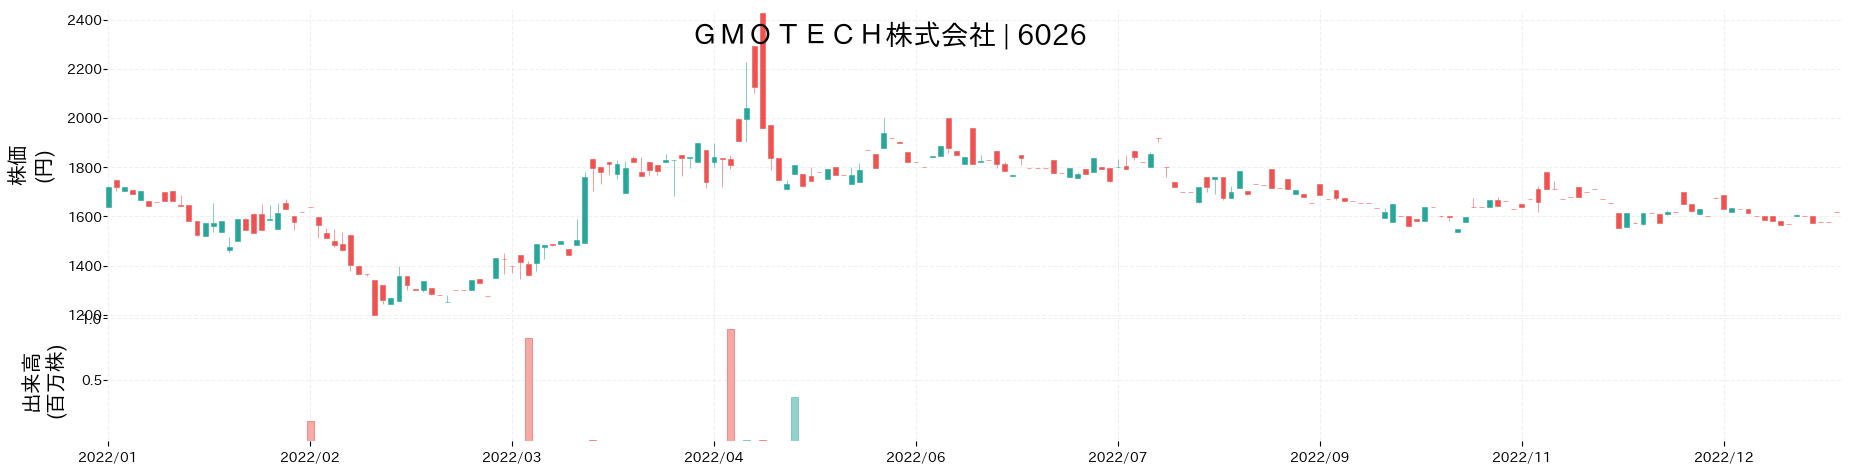 GMO TECHの株価推移(2022)